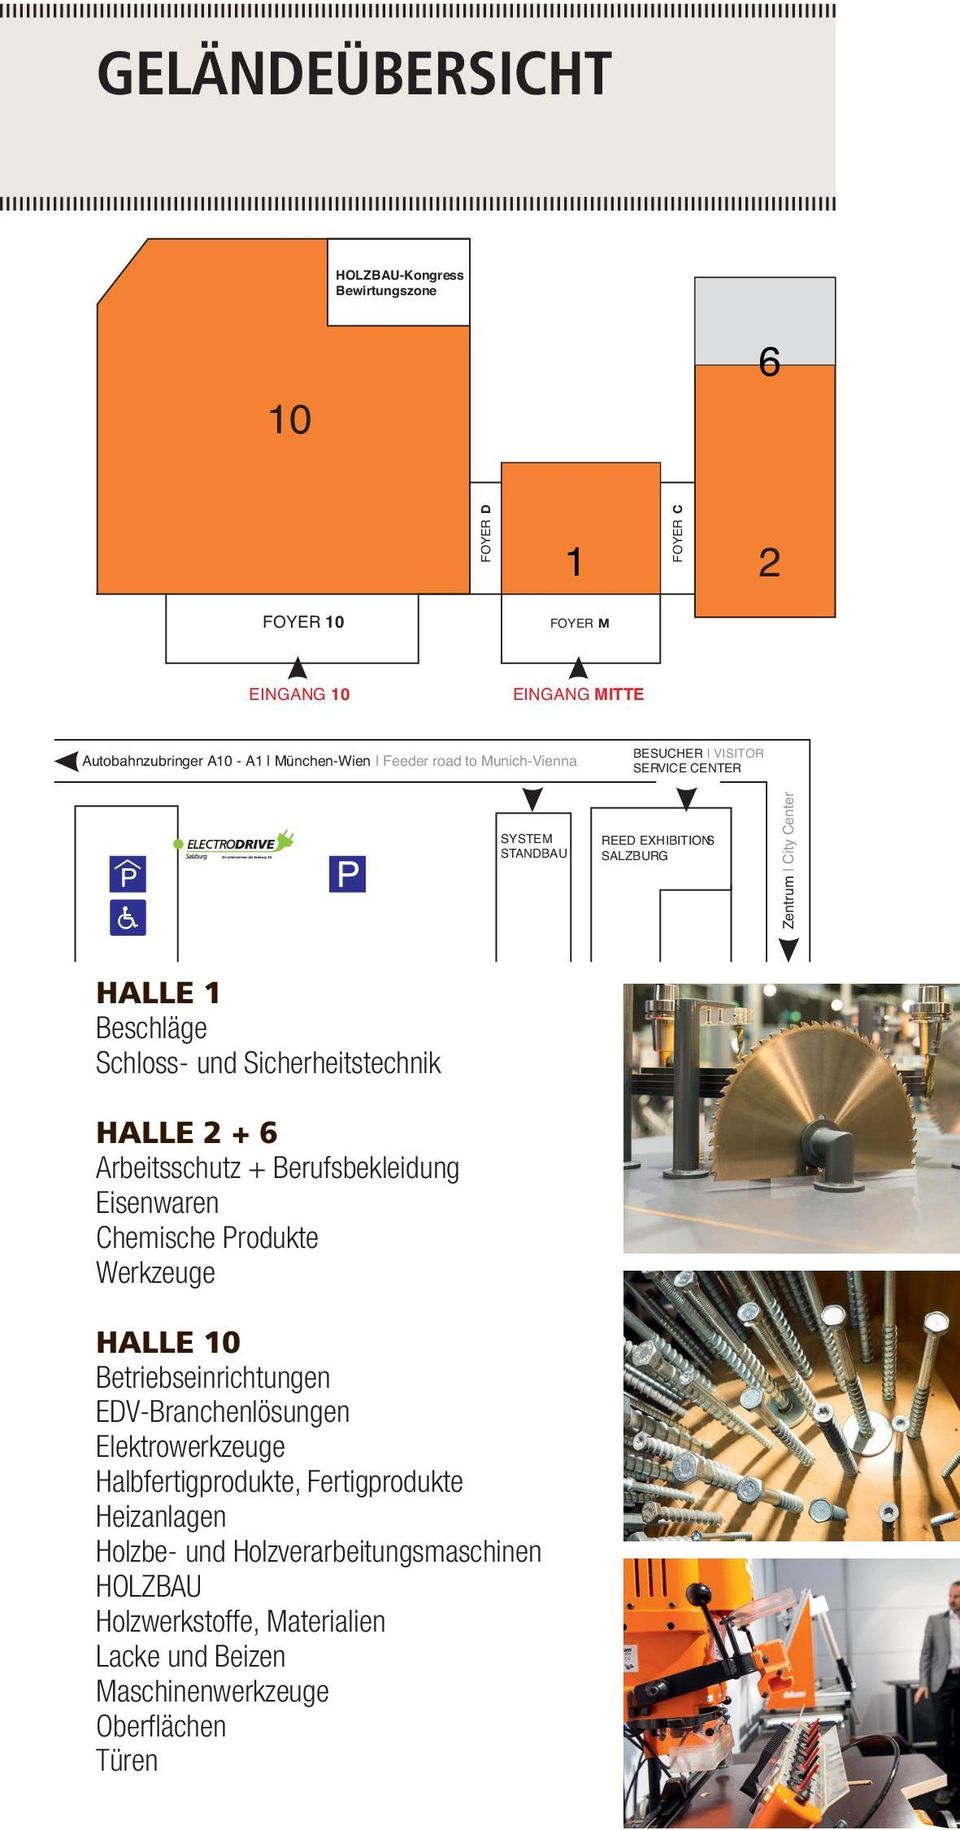 Sicherheitstechnik HALLE 2 + 6 Arbeitsschutz + Berufsbekleidung Eisenwaren Chemische Produkte Werkzeuge HALLE 10 Betriebseinrichtungen EDV-Branchenlösungen